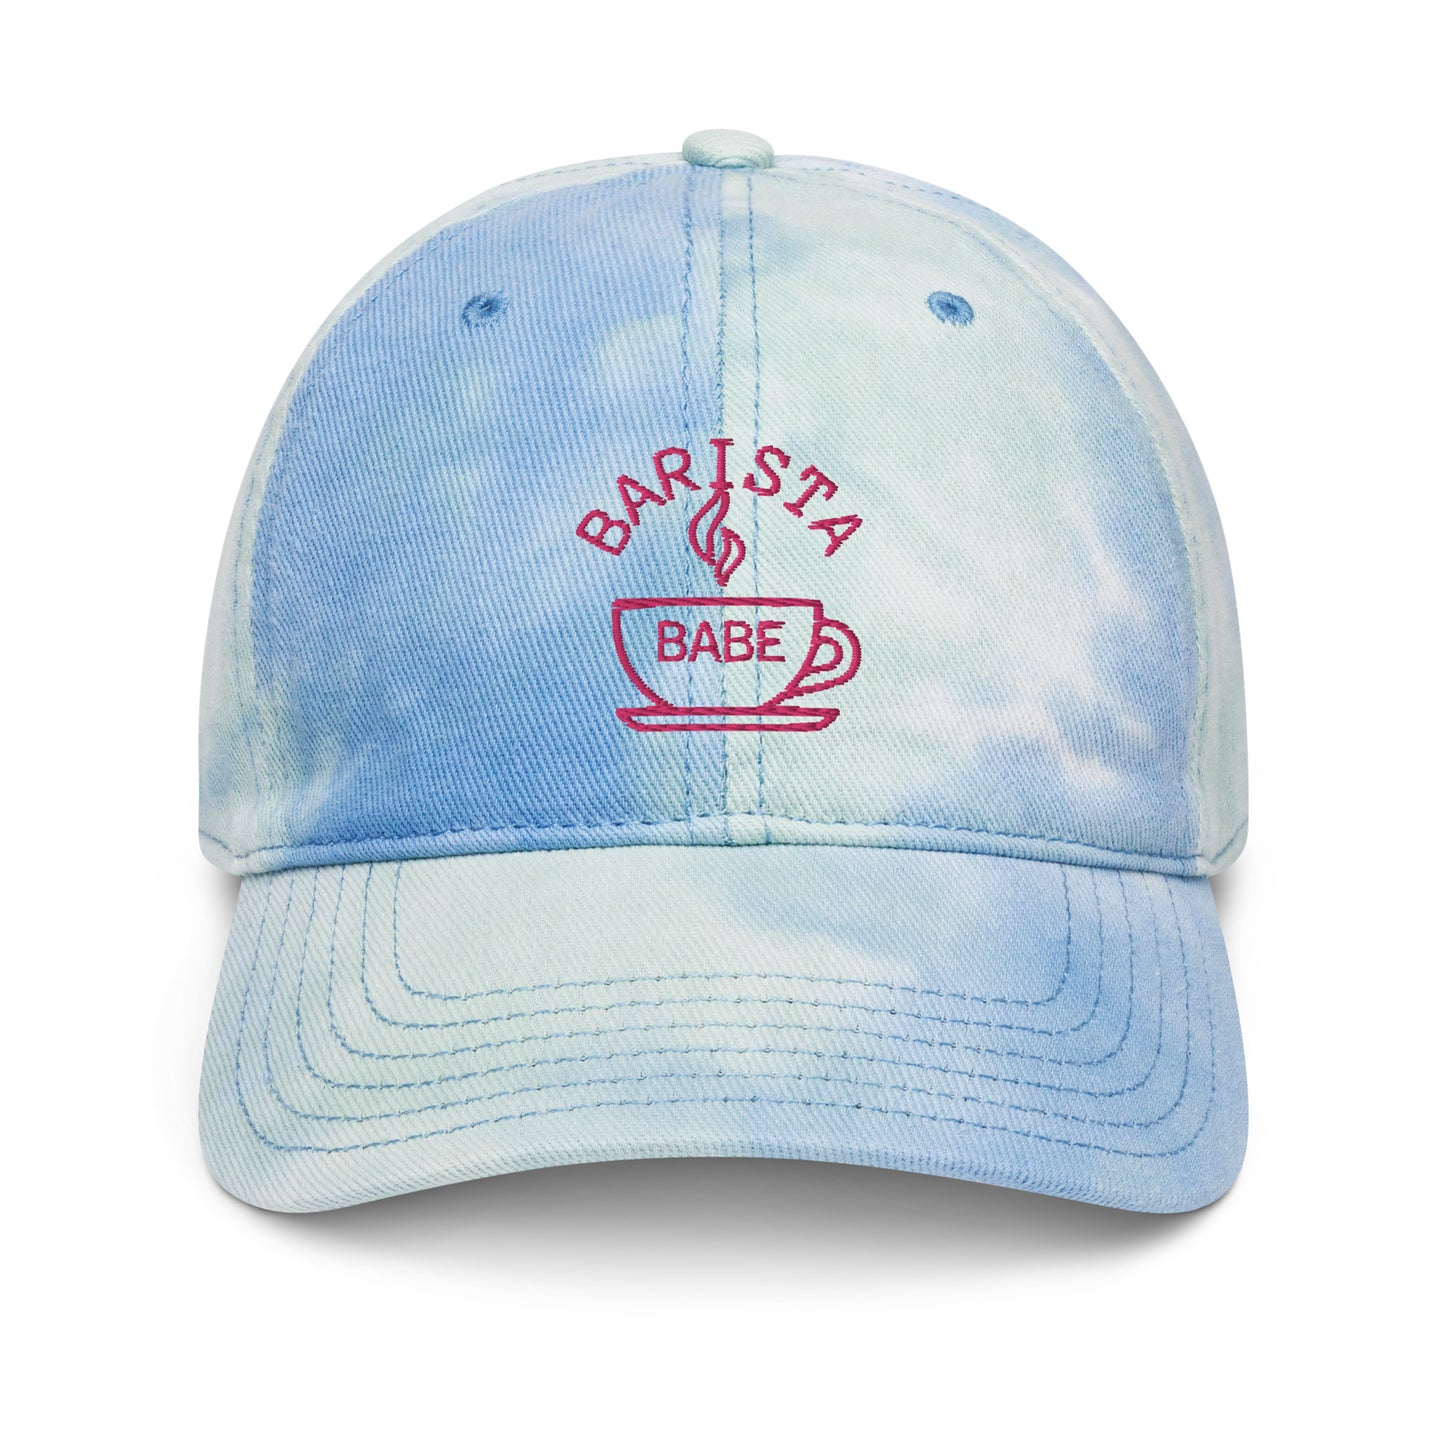 (Summer Collection) Barista Babe Tie dye hat